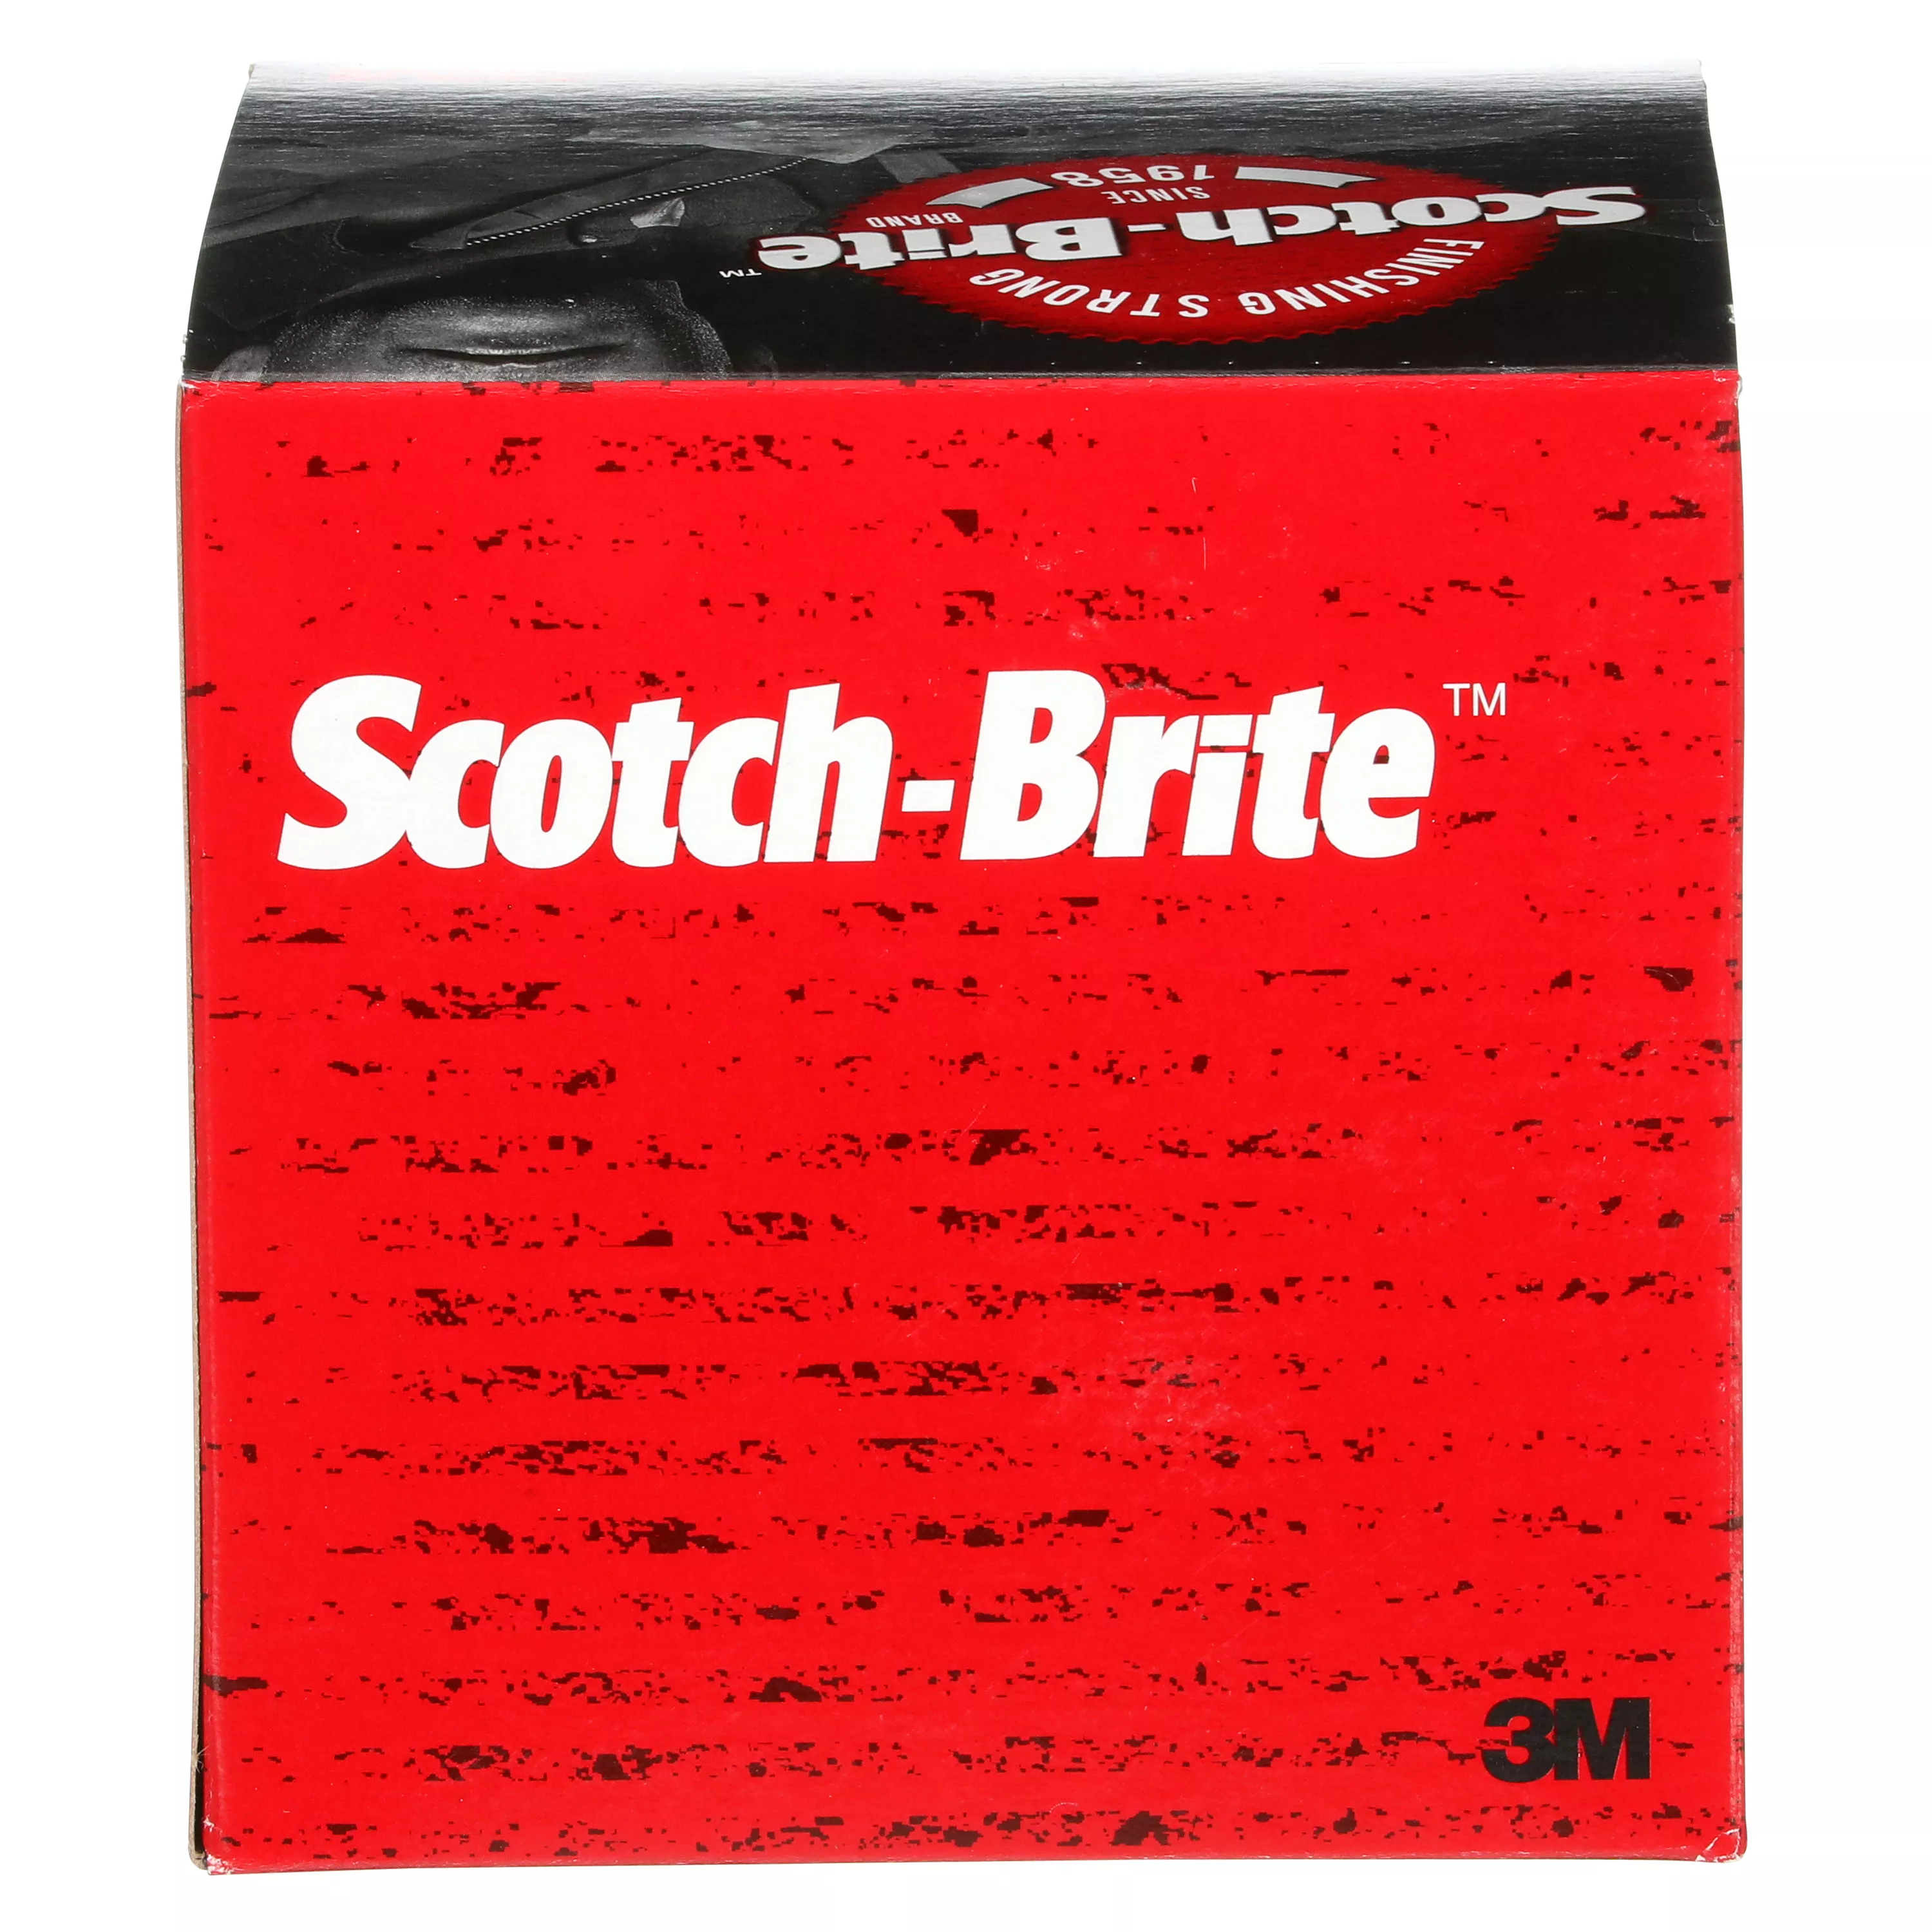 SKU 7100176153 | Scotch-Brite™ Clean and Strip XT Pro Disc